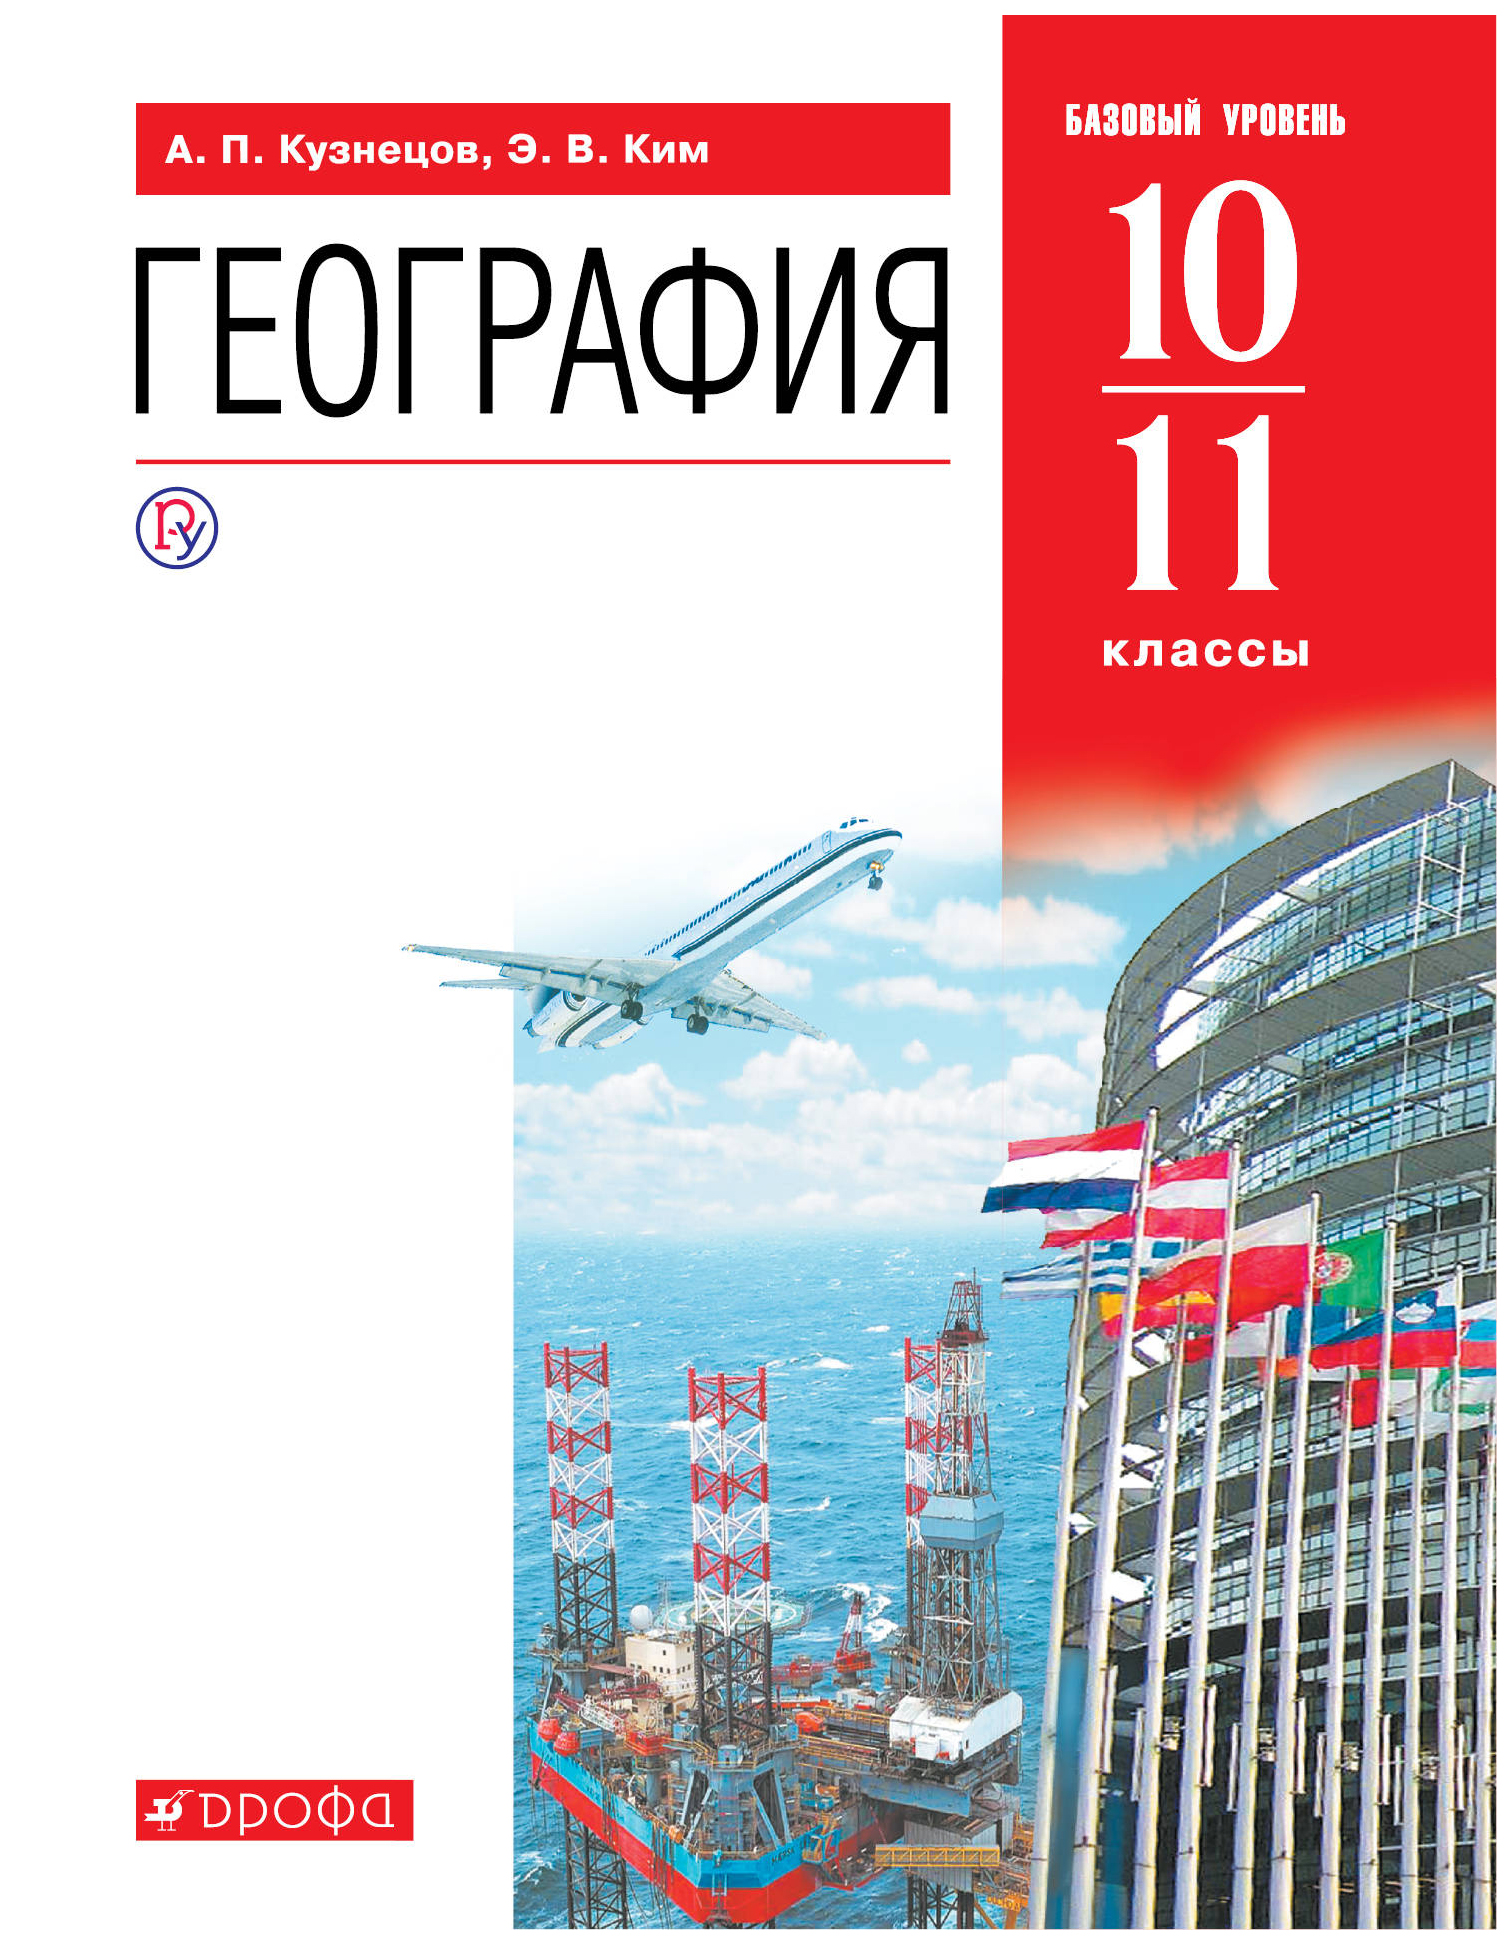 Геогр 10. География 10 класс (Кузнецов а.п.) Издательство Дрофа.